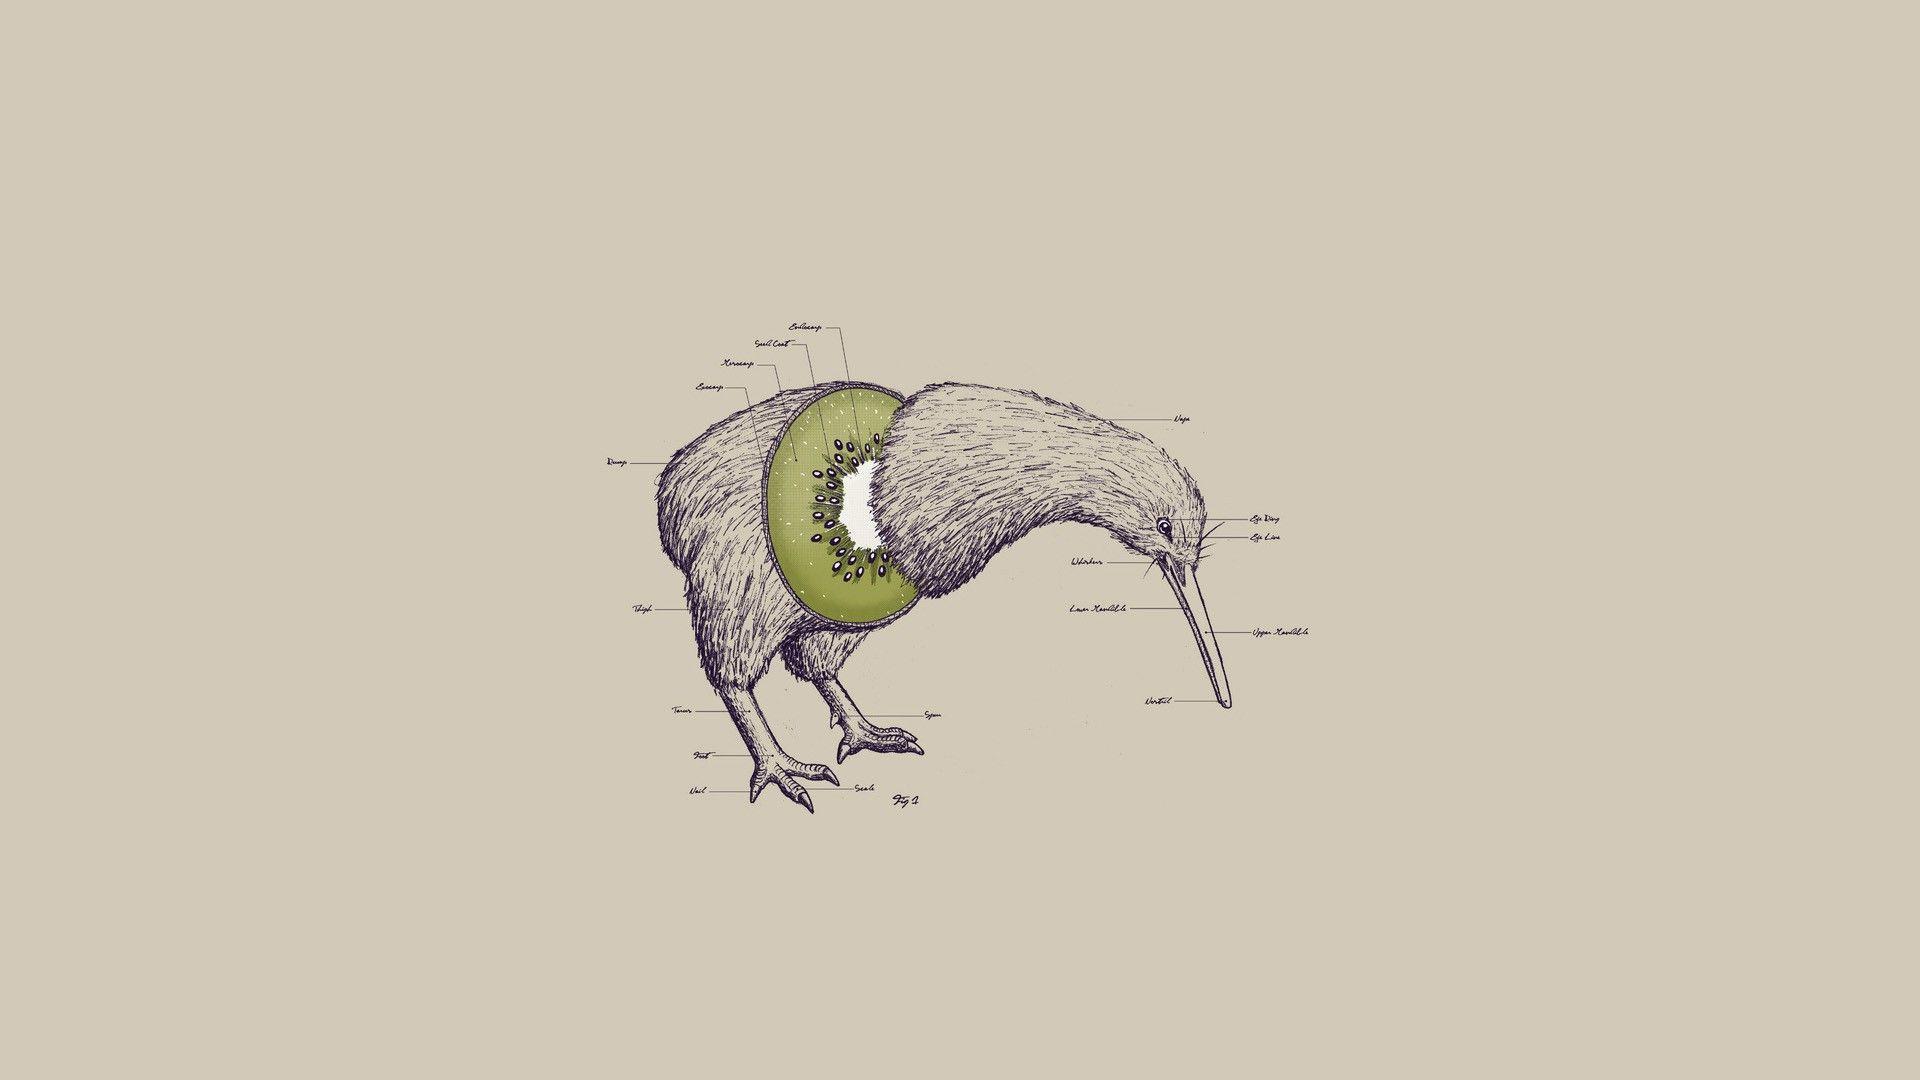 تصویر هنری ابستره پرنده با طرح انتزاعی برای دانلود 